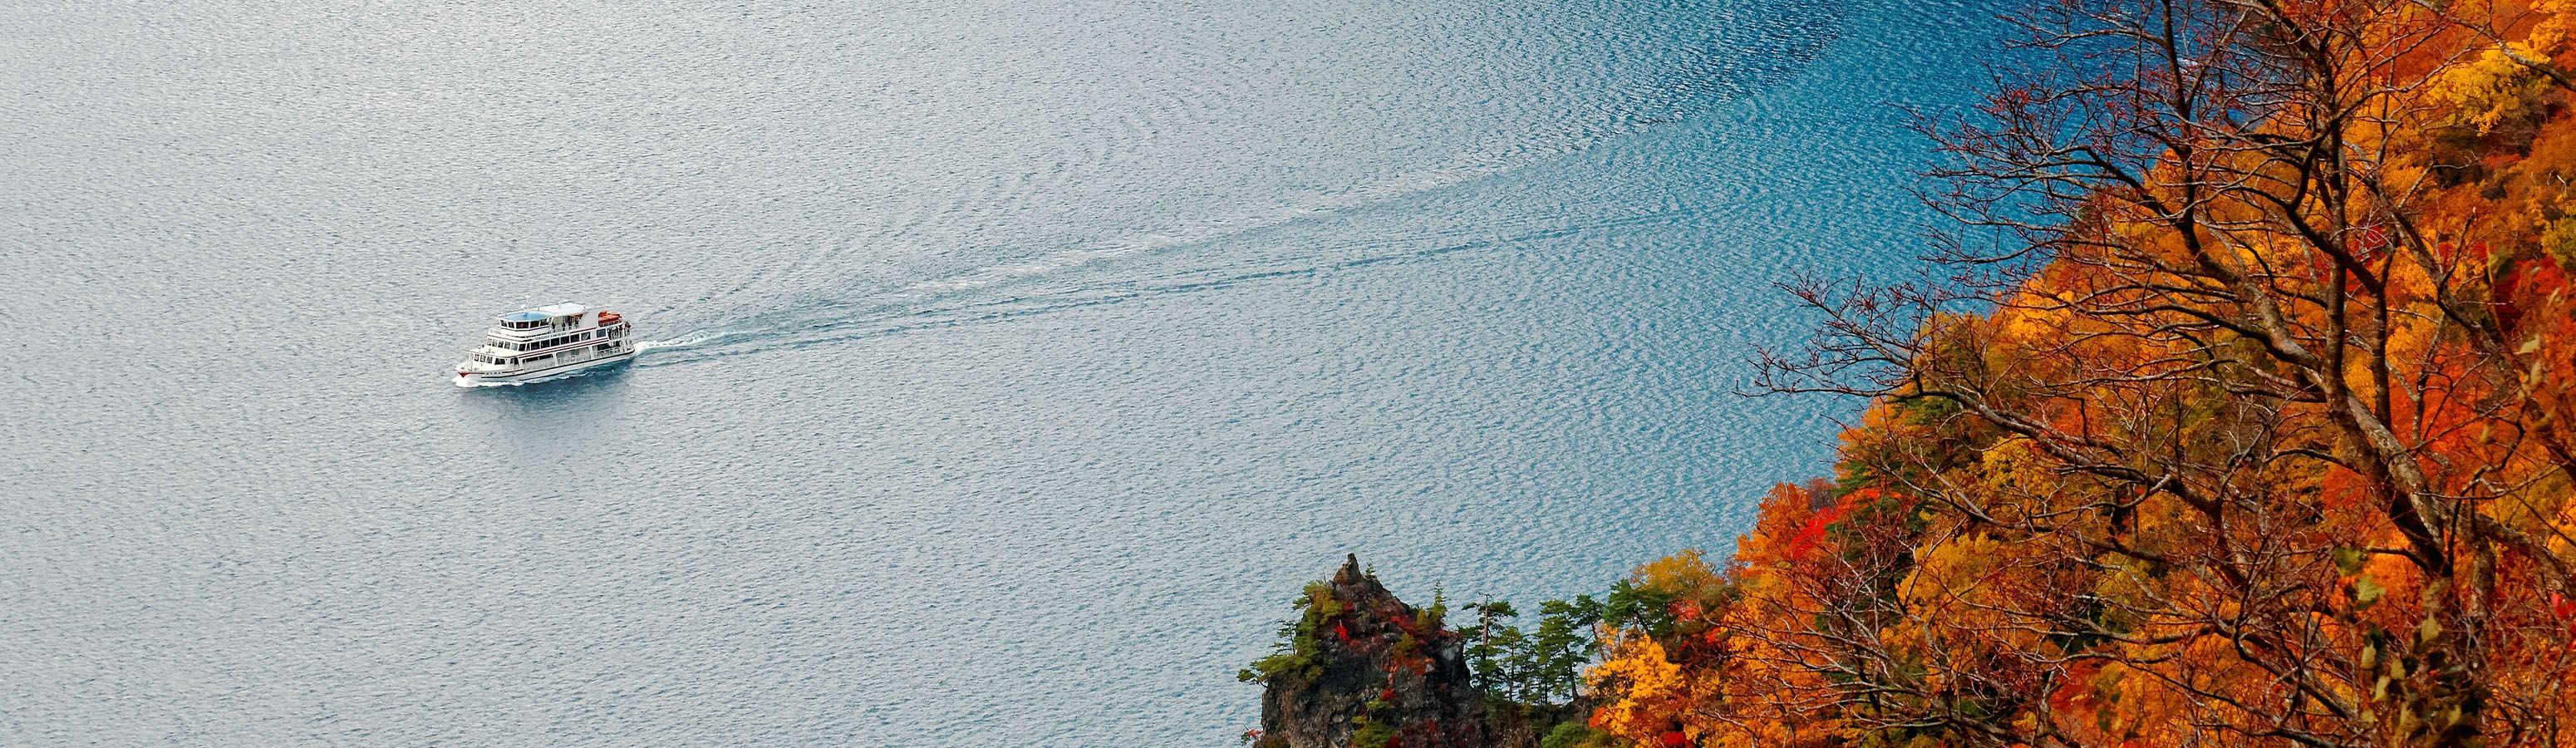 Vagando per i laghi VII - i laghi vulcanici più belli del mondo